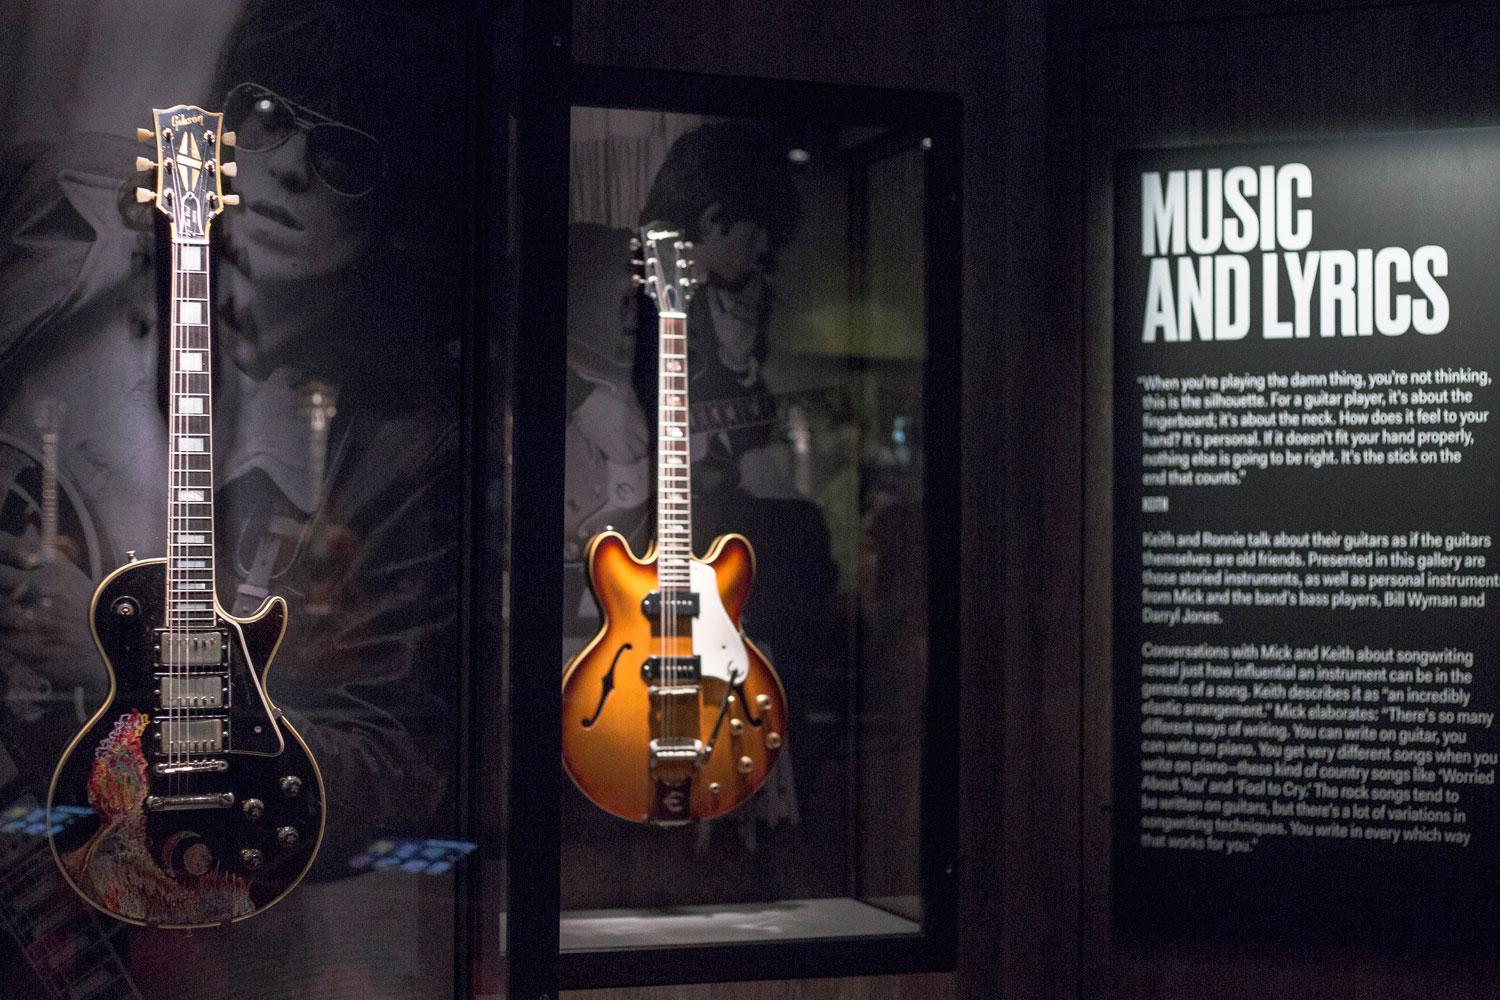 Keith Richards handmålade gitarr, till vänster, på utställningen.